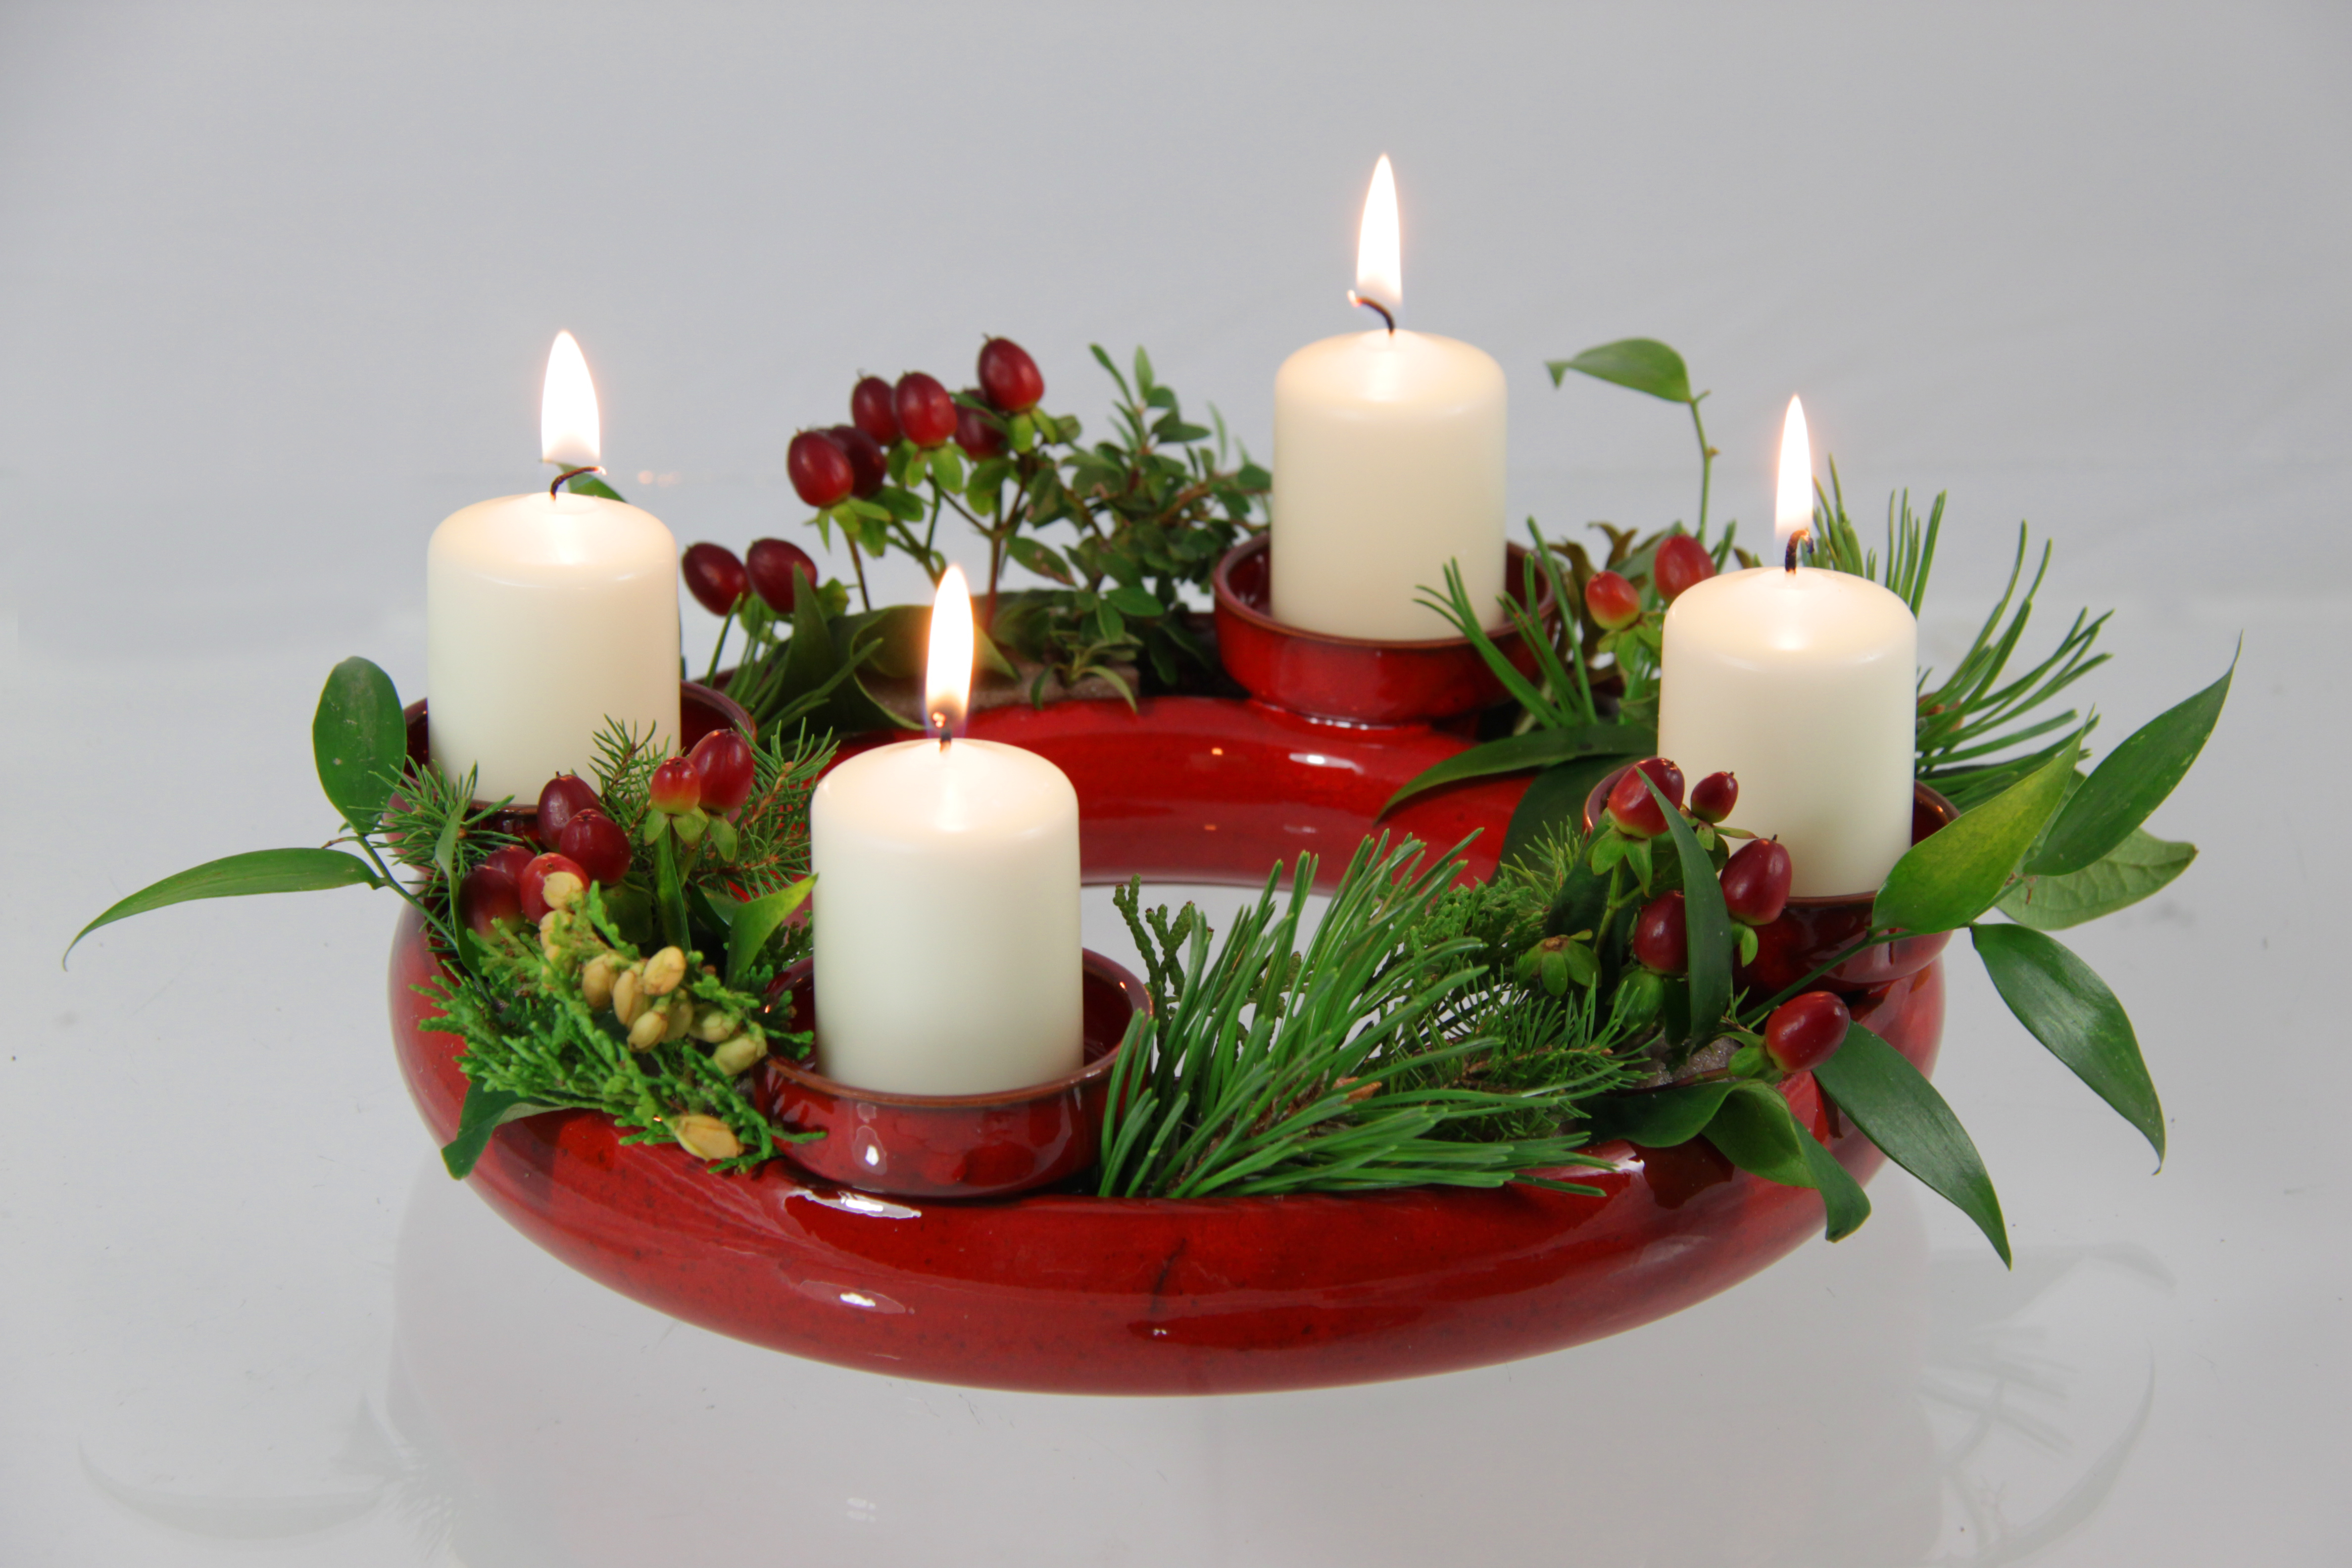 Blumenring-Set halb mit Kerzenhaltern gr/üne Effektglasur sch/öne Dekoraton ideales Geschenk